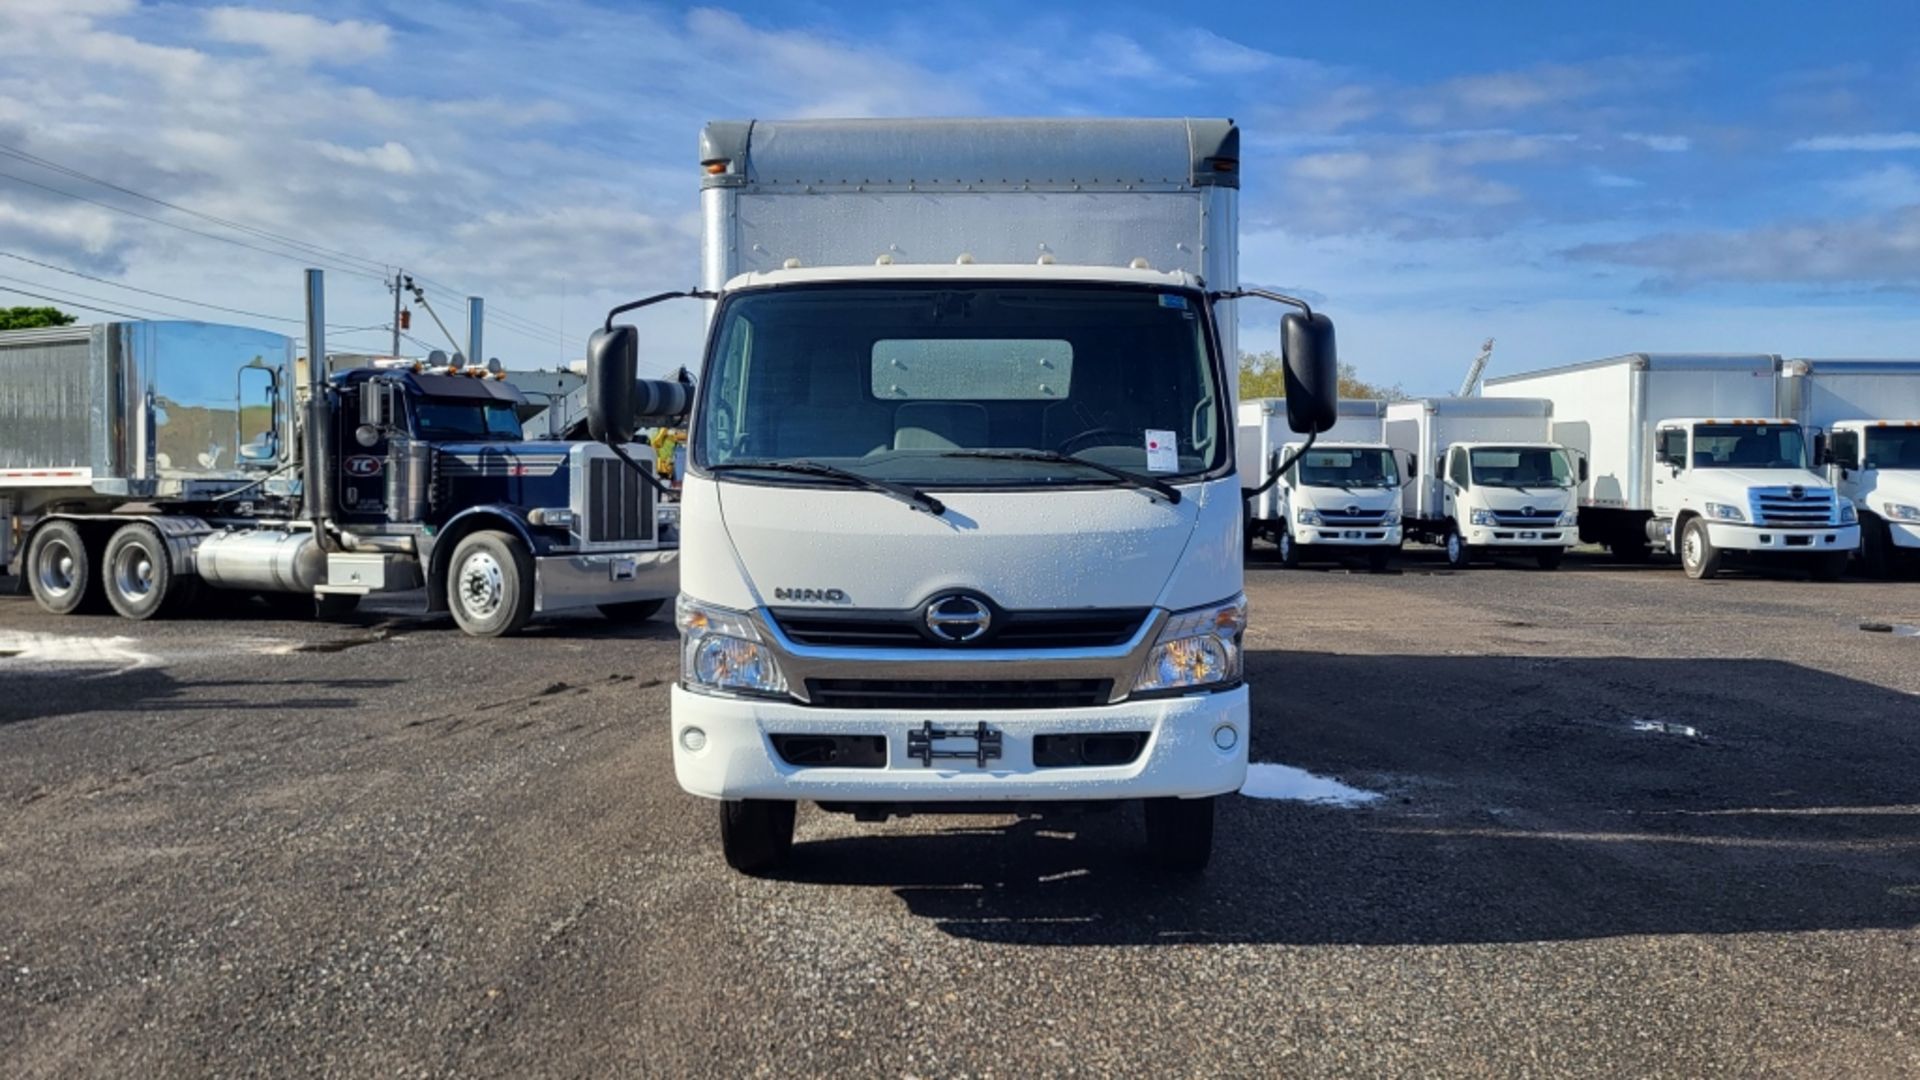 2017 Hino Box Truck - Image 2 of 20